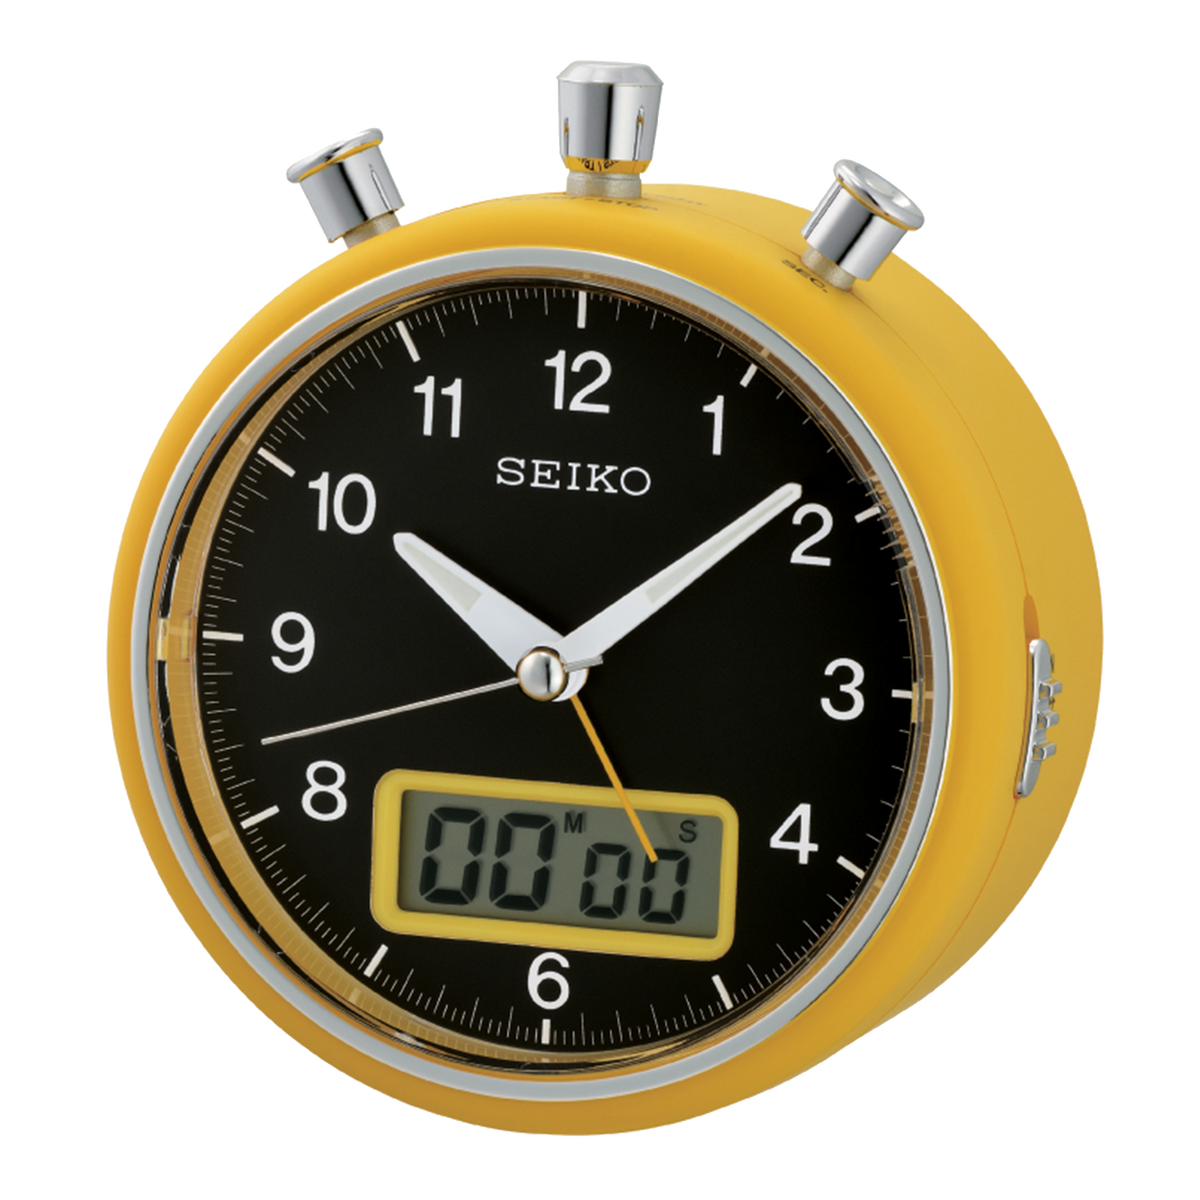 Seiko - Stopwatch style Alarm Clock